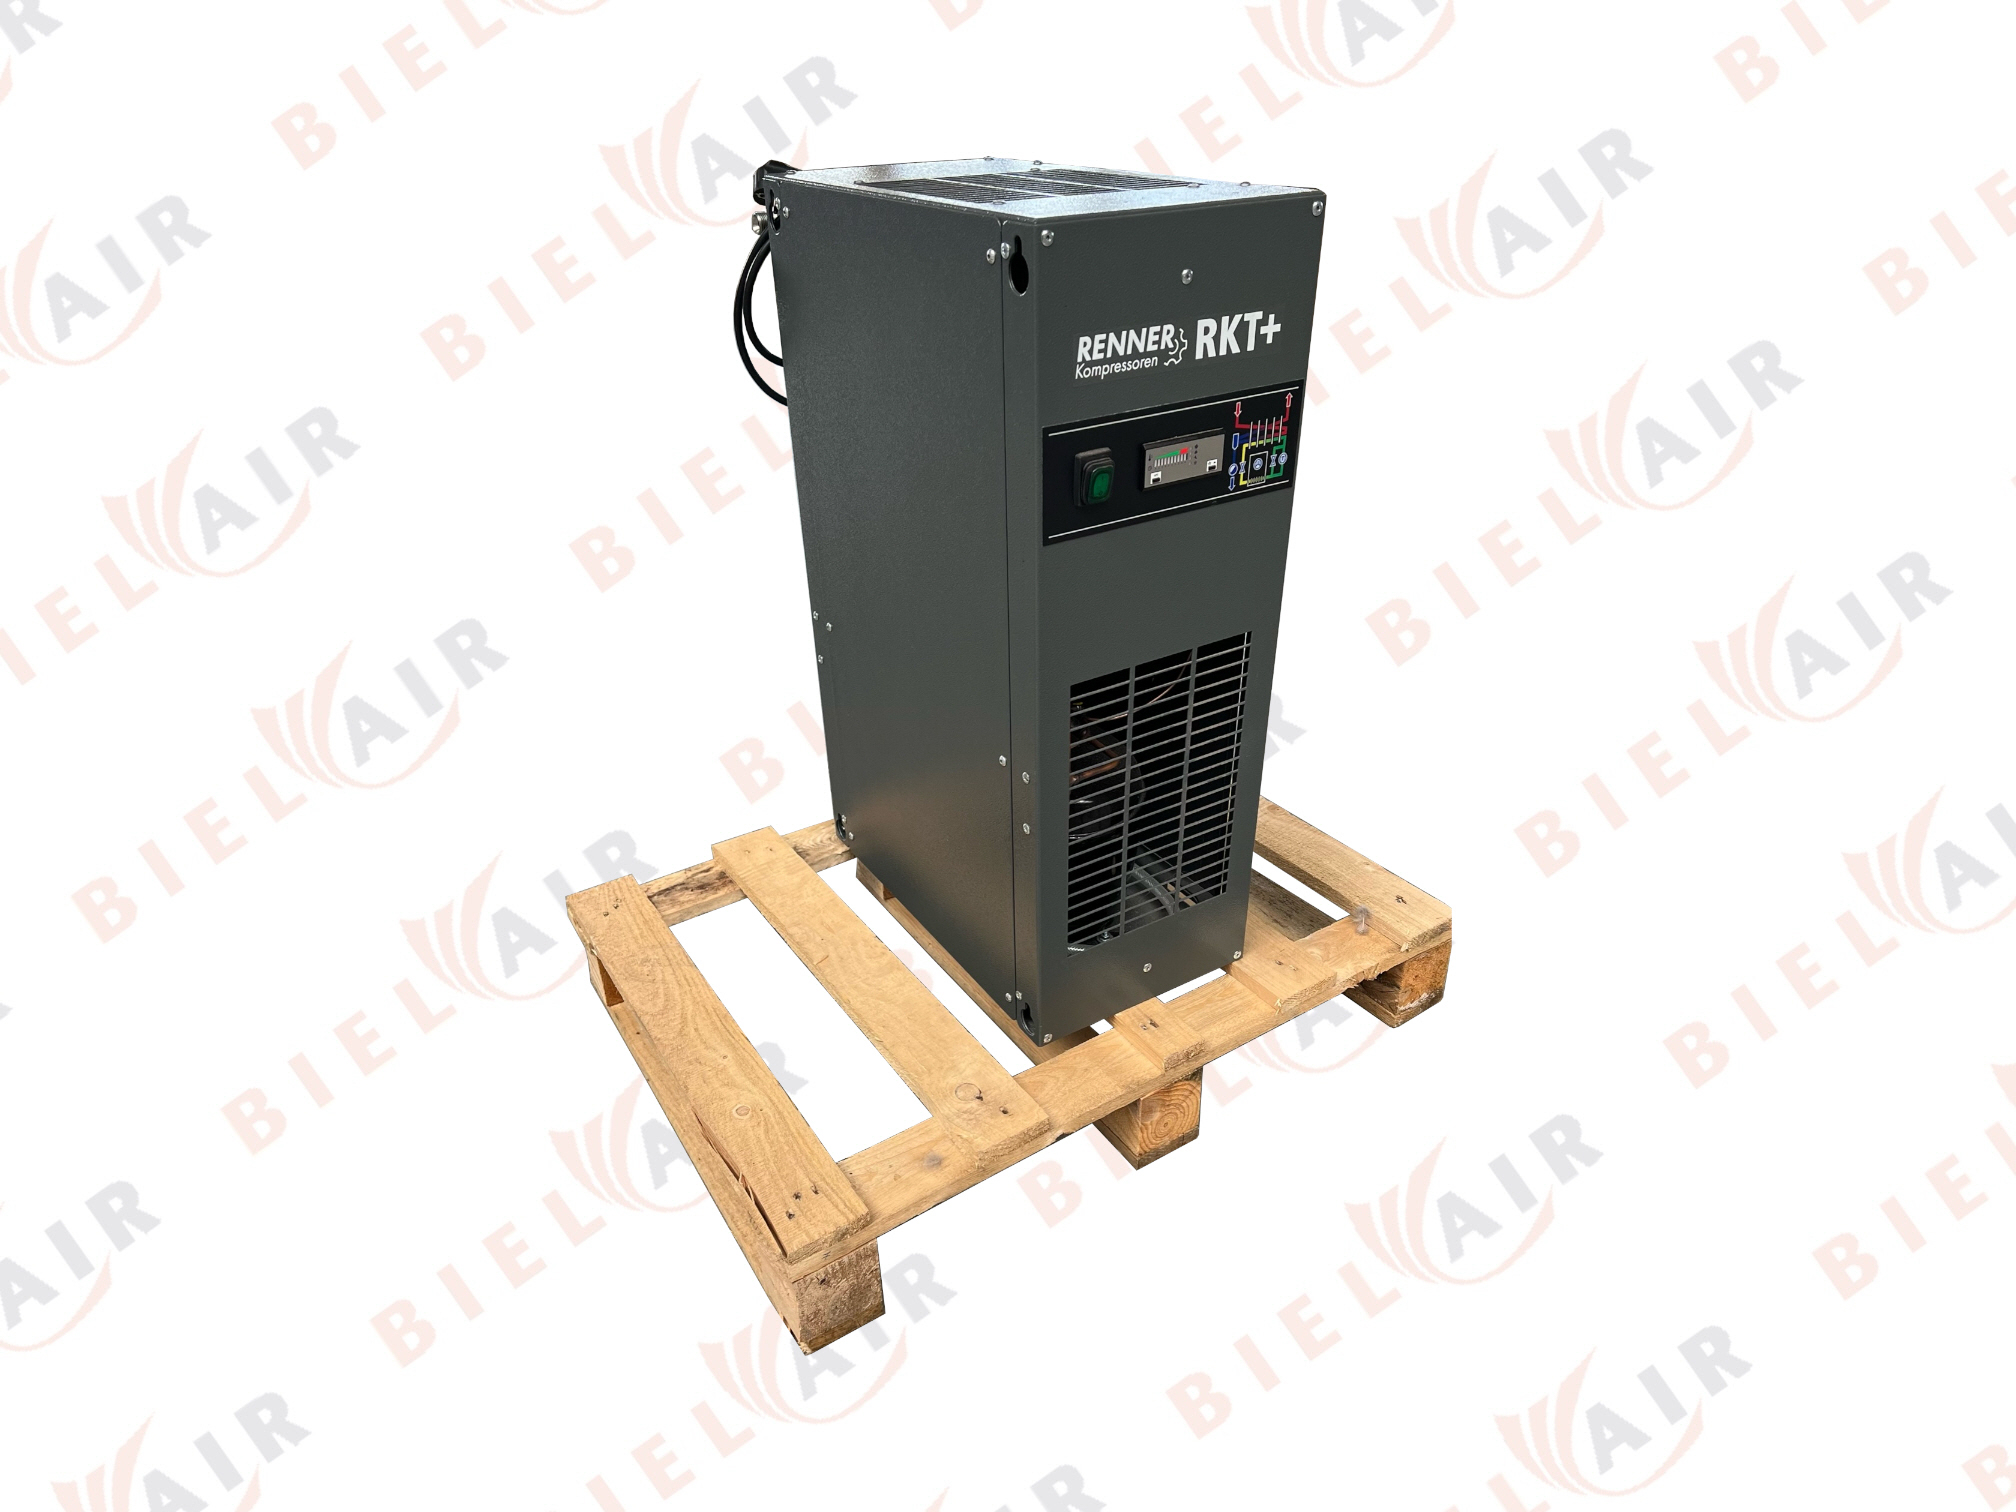 RENNER Druckluftkältetrockner RKT+ 0085 Gebraucht mit niveaugest. Kondensatableiter Gebrauchte Kältetrockner